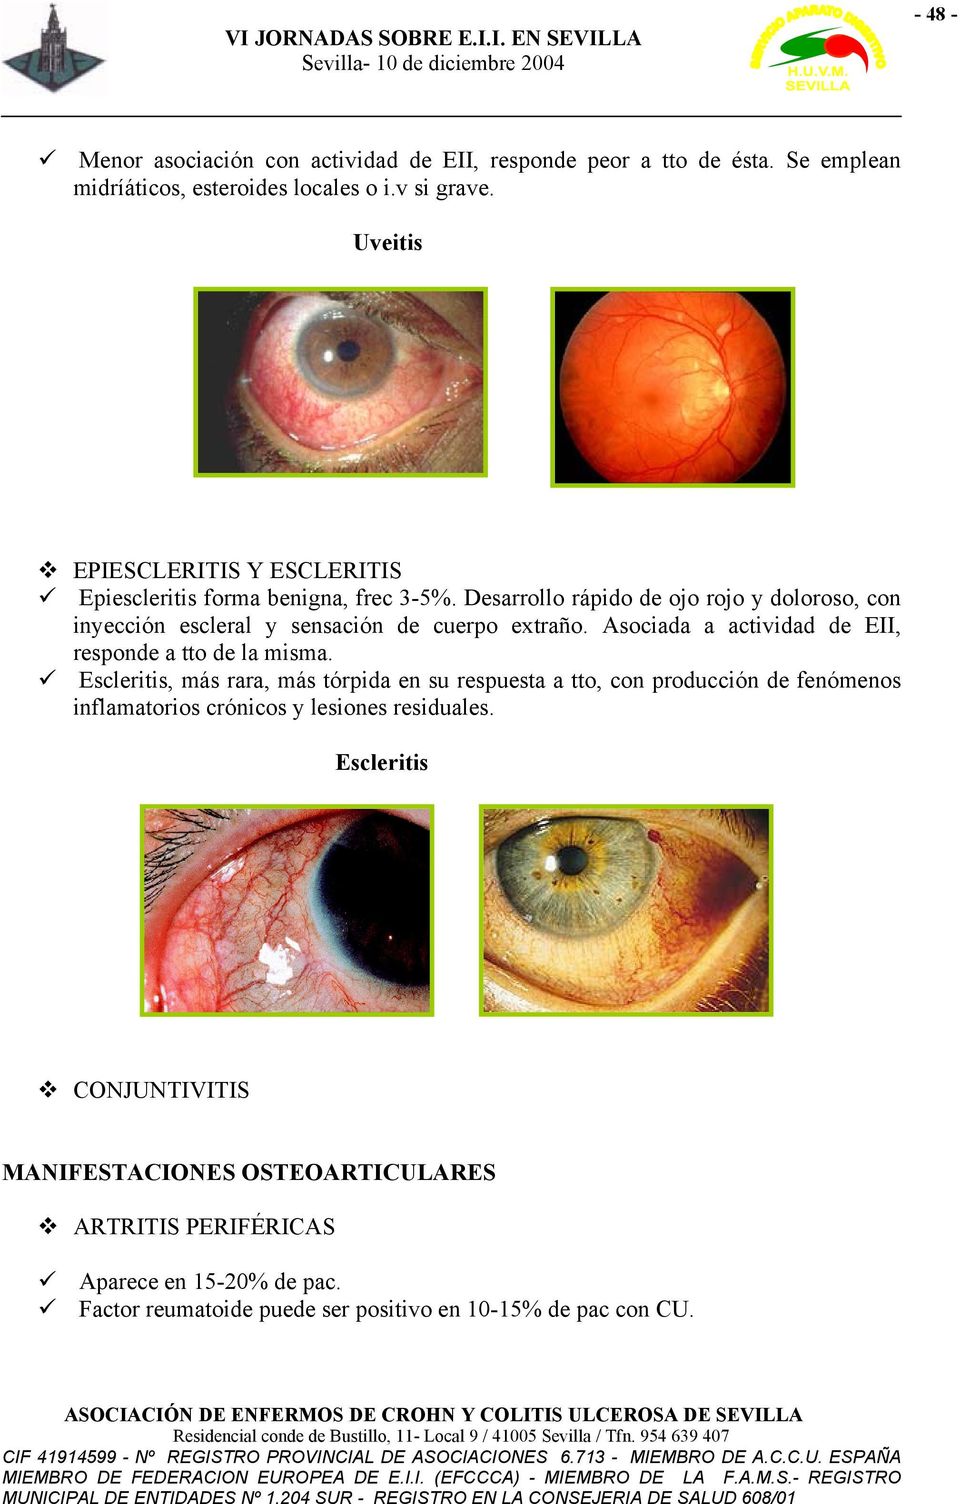 Desarrollo rápido de ojo rojo y doloroso, con inyección escleral y sensación de cuerpo extraño. Asociada a actividad de EII, responde a tto de la misma.